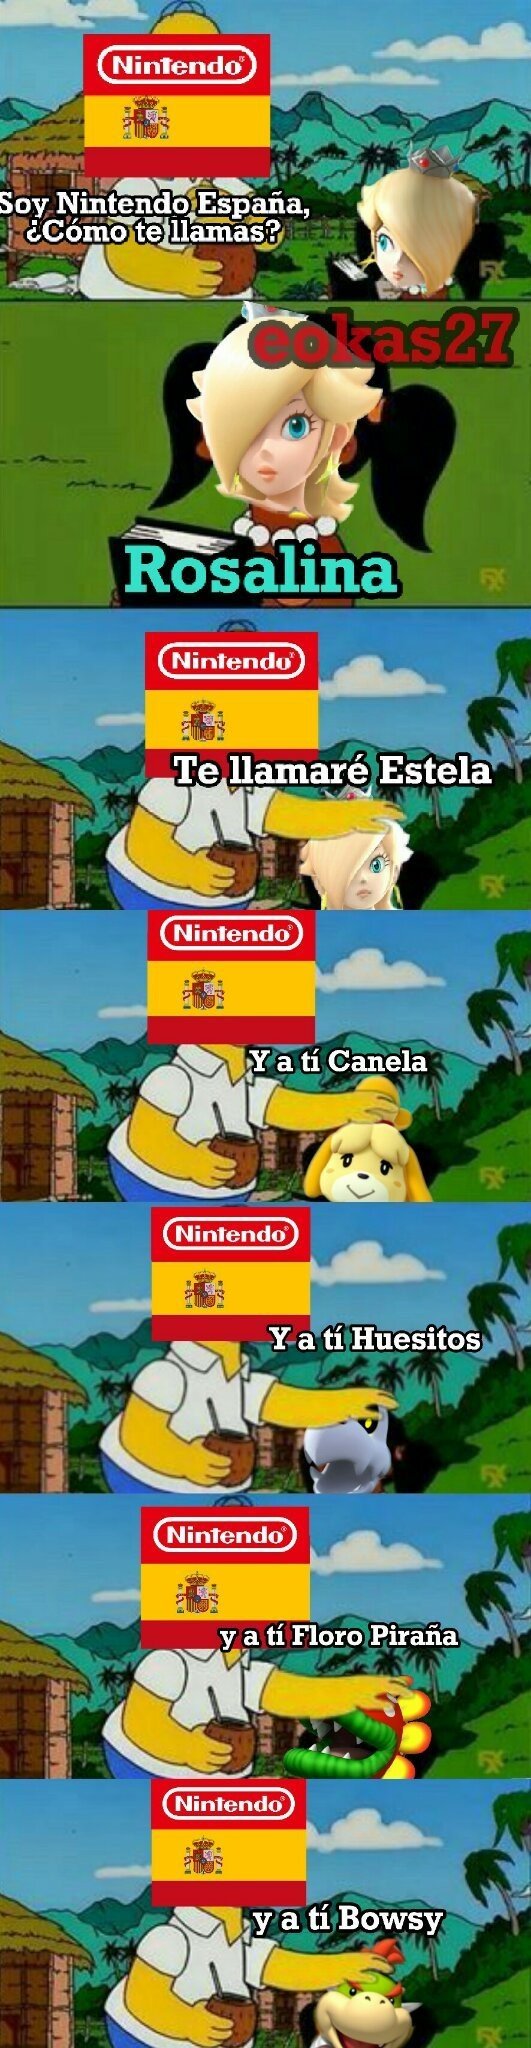 Meme_otros - Nintendo España